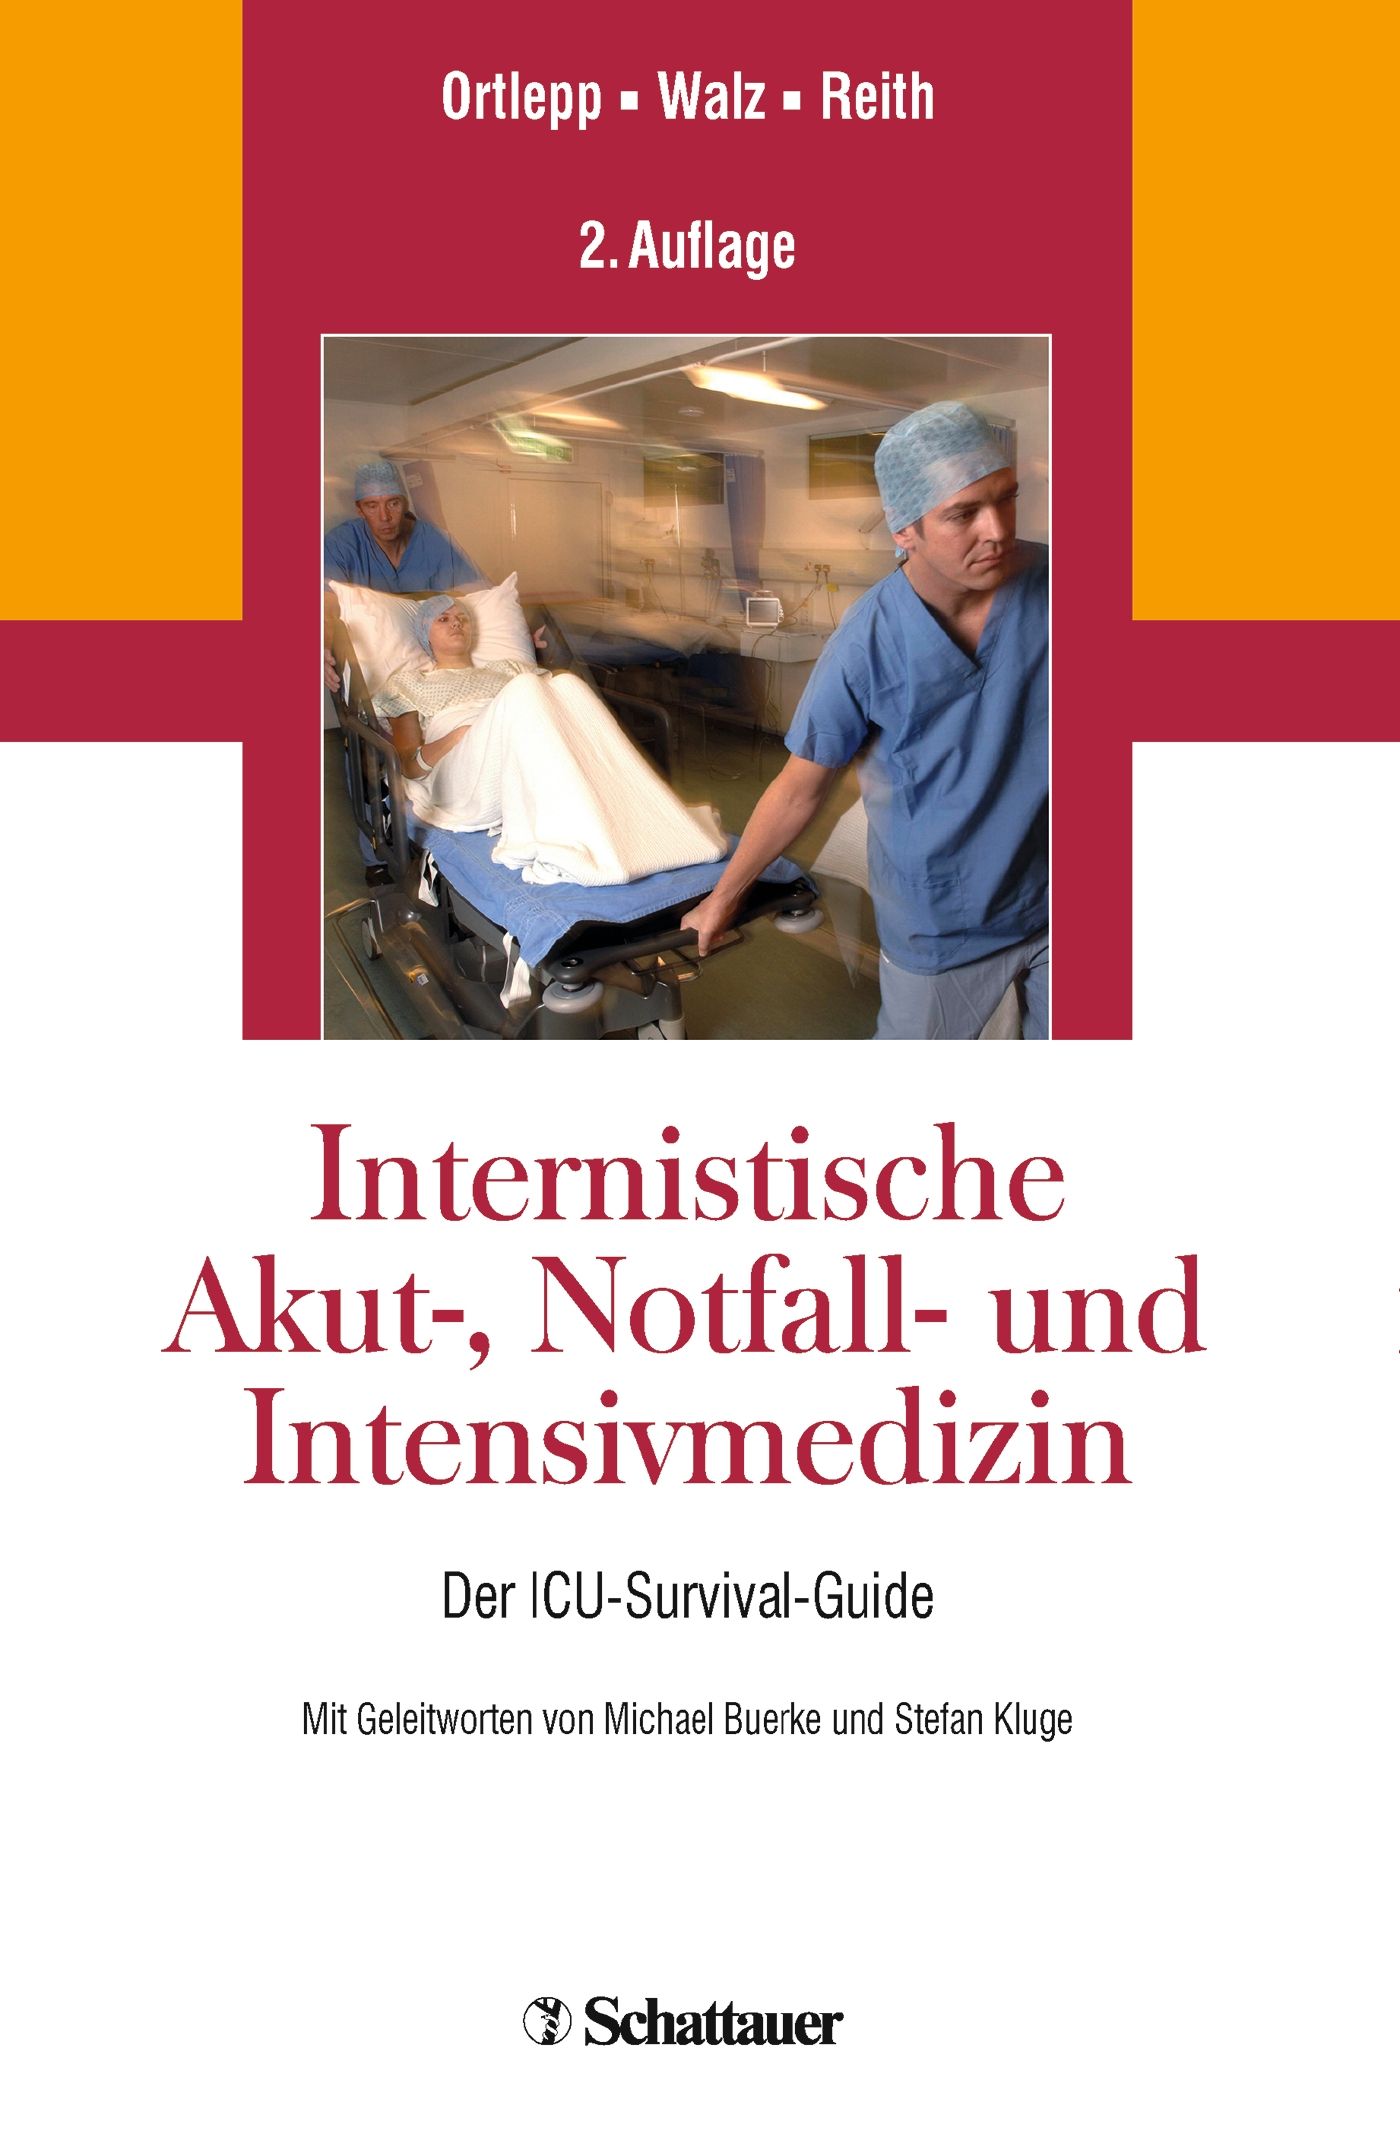 Internistische Akut-, Notfall- und Intensivmedizin